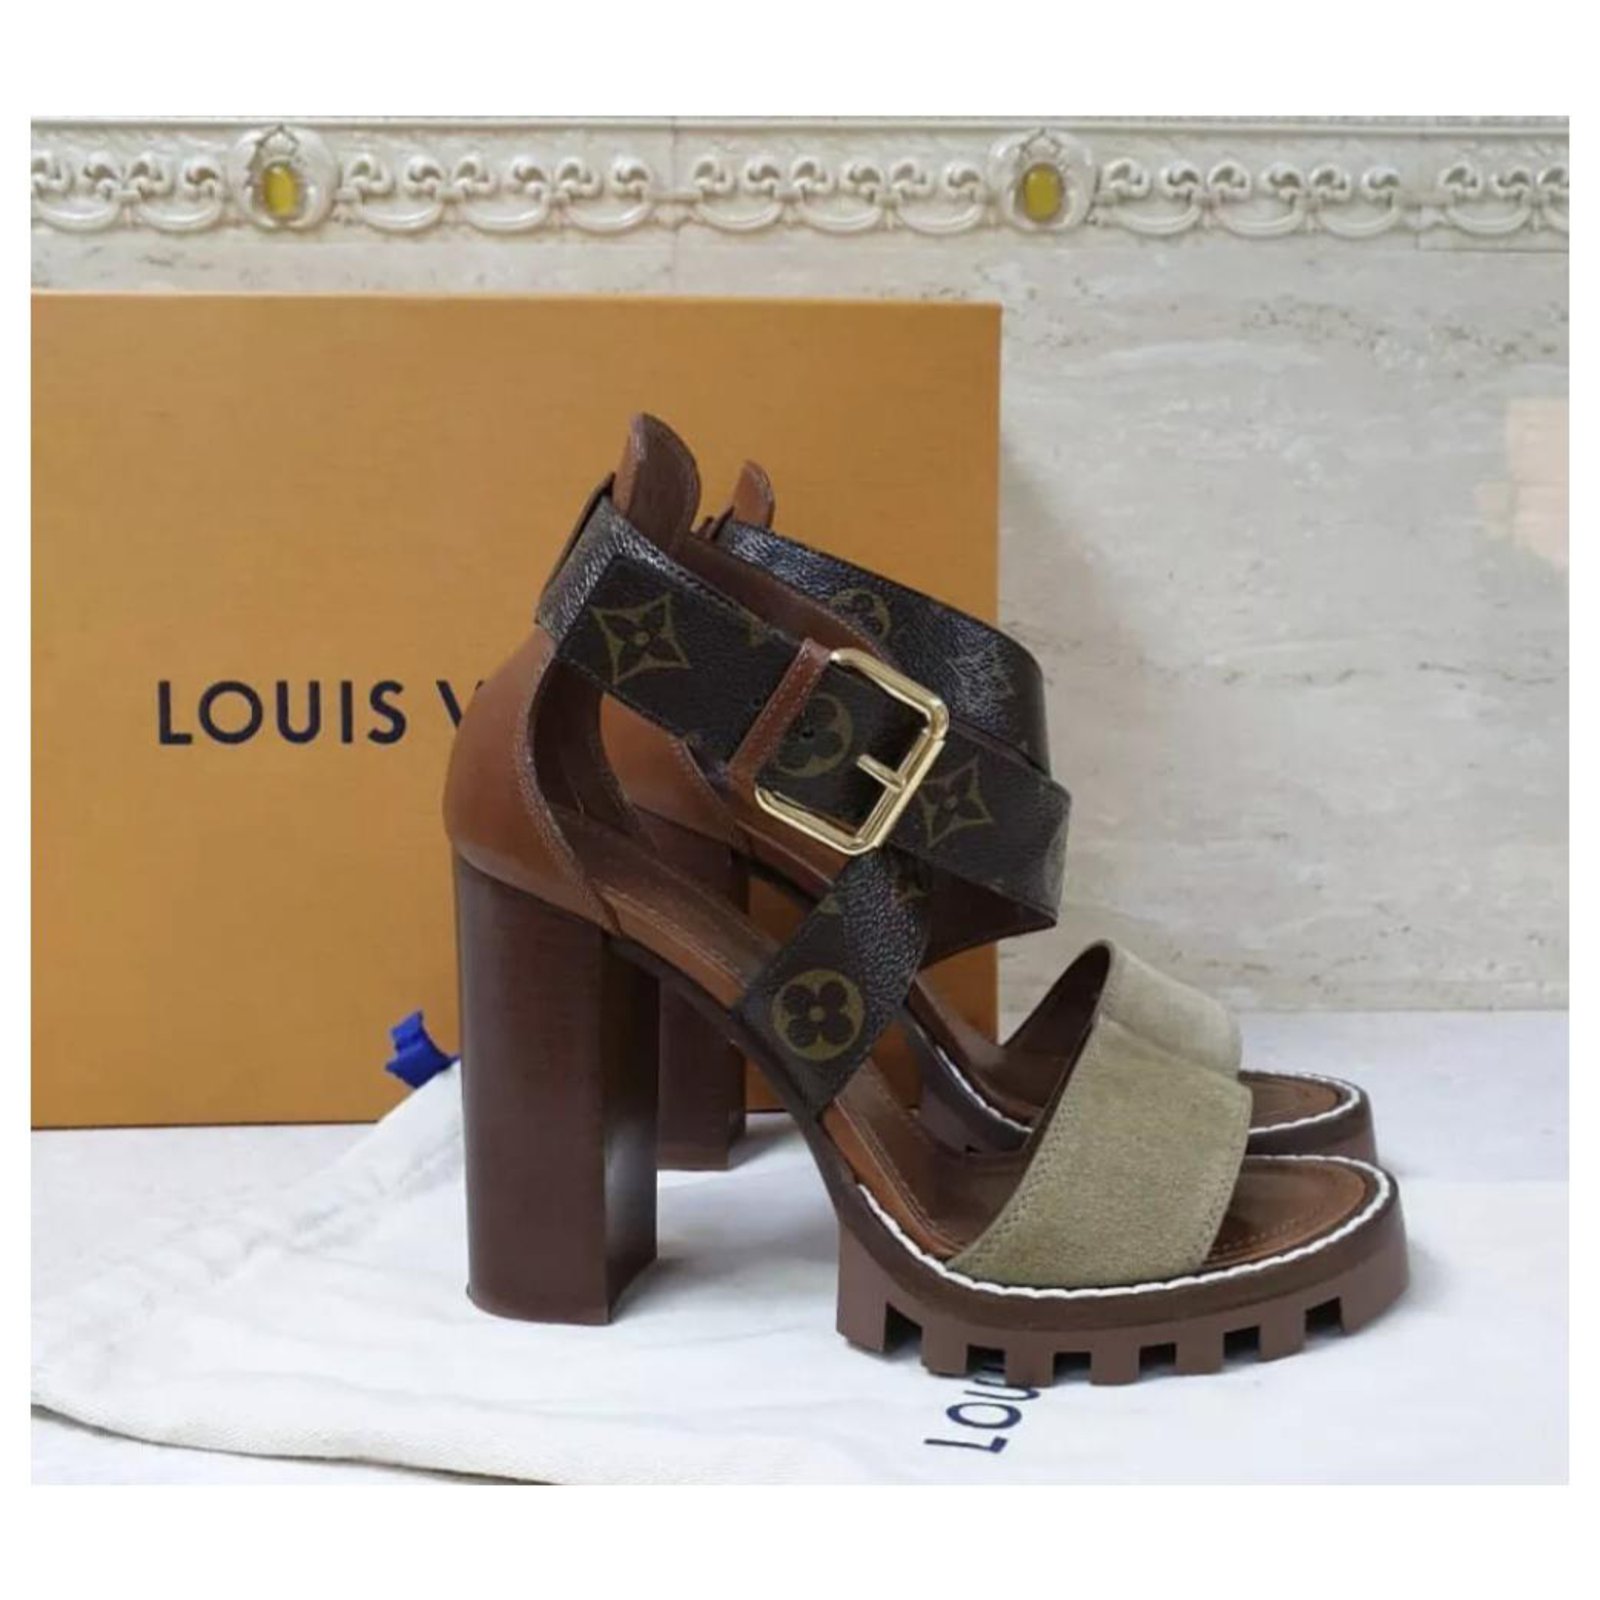 Nom du logo des sandales à talons Louis Vuitton